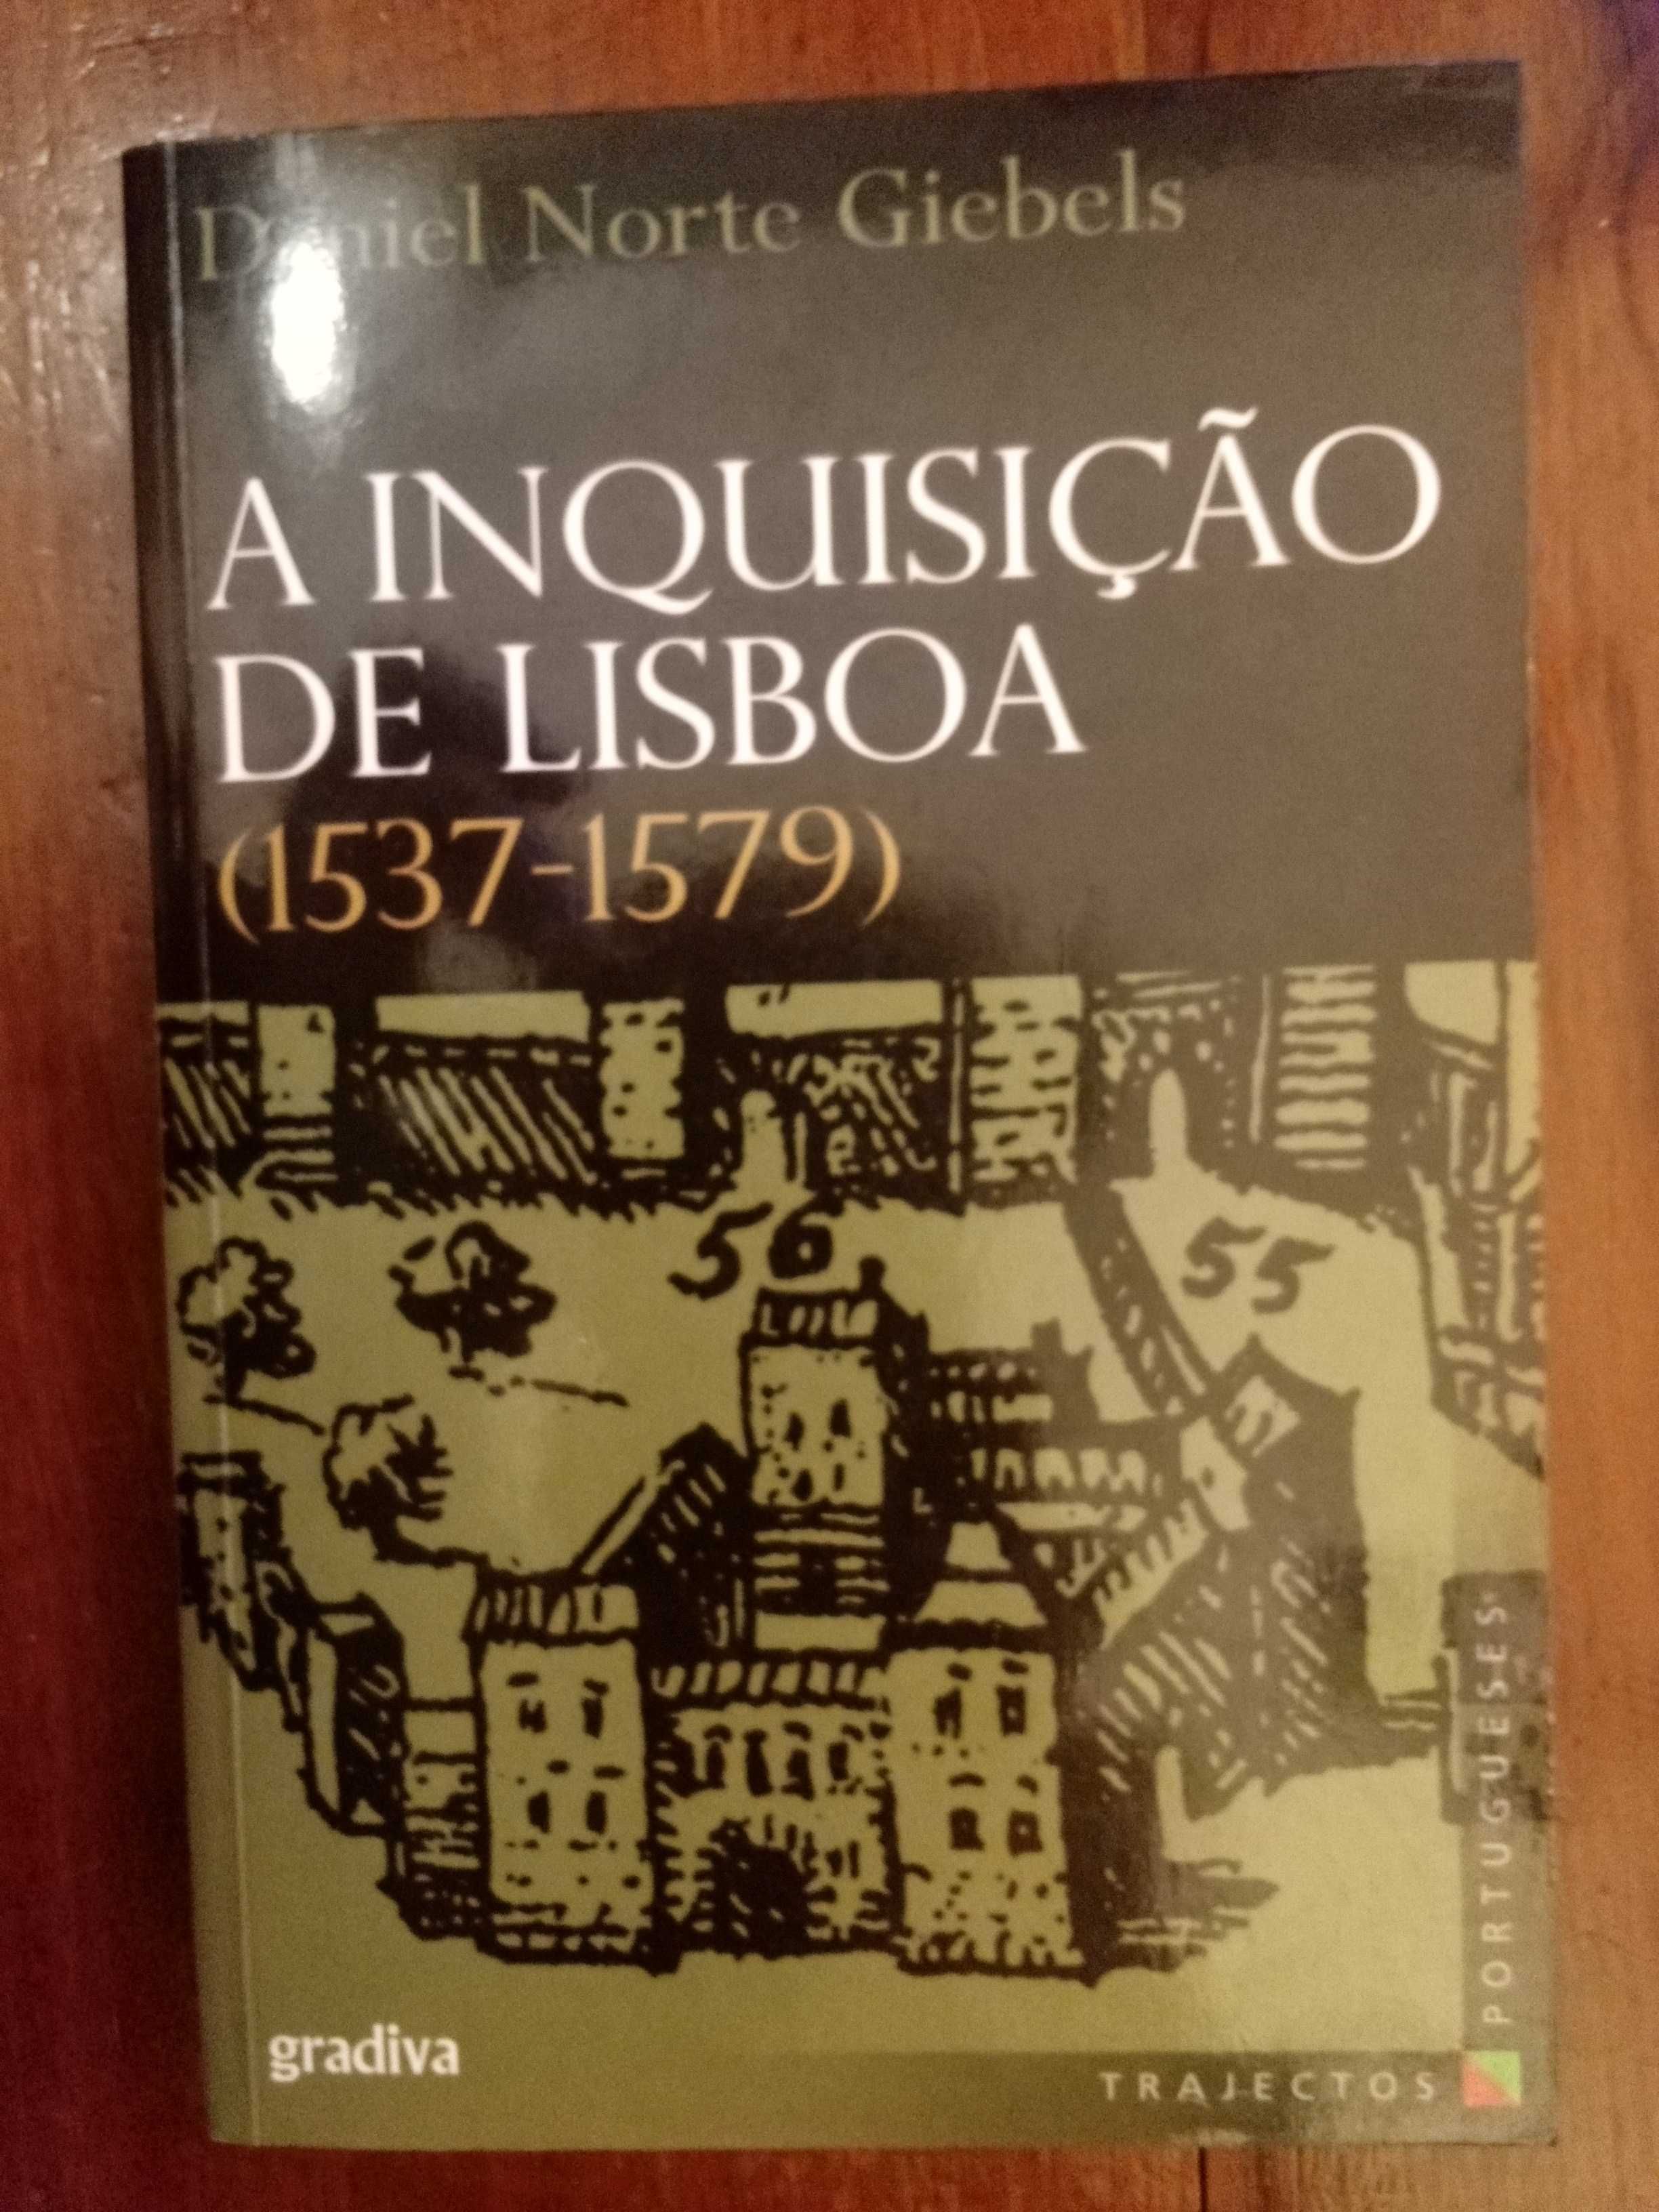 Daniel Norte Giebels - A Inquisição de Lisboa